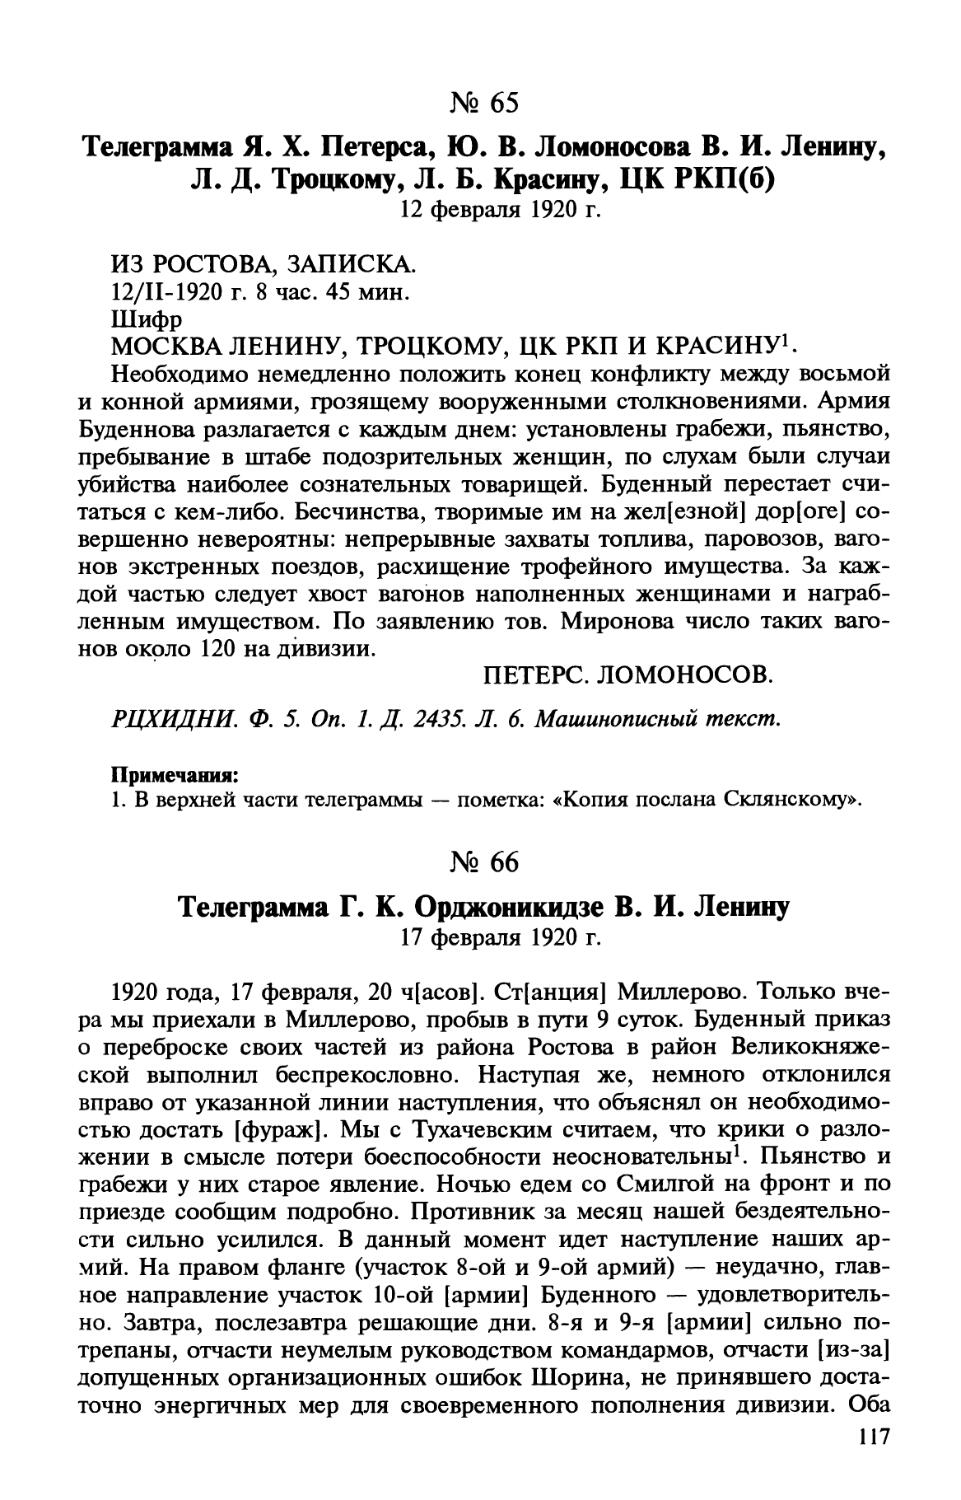 66. Телеграмма Г. К. Орджоникидзе В. И. Ленину. 17 февраля 1920 г.